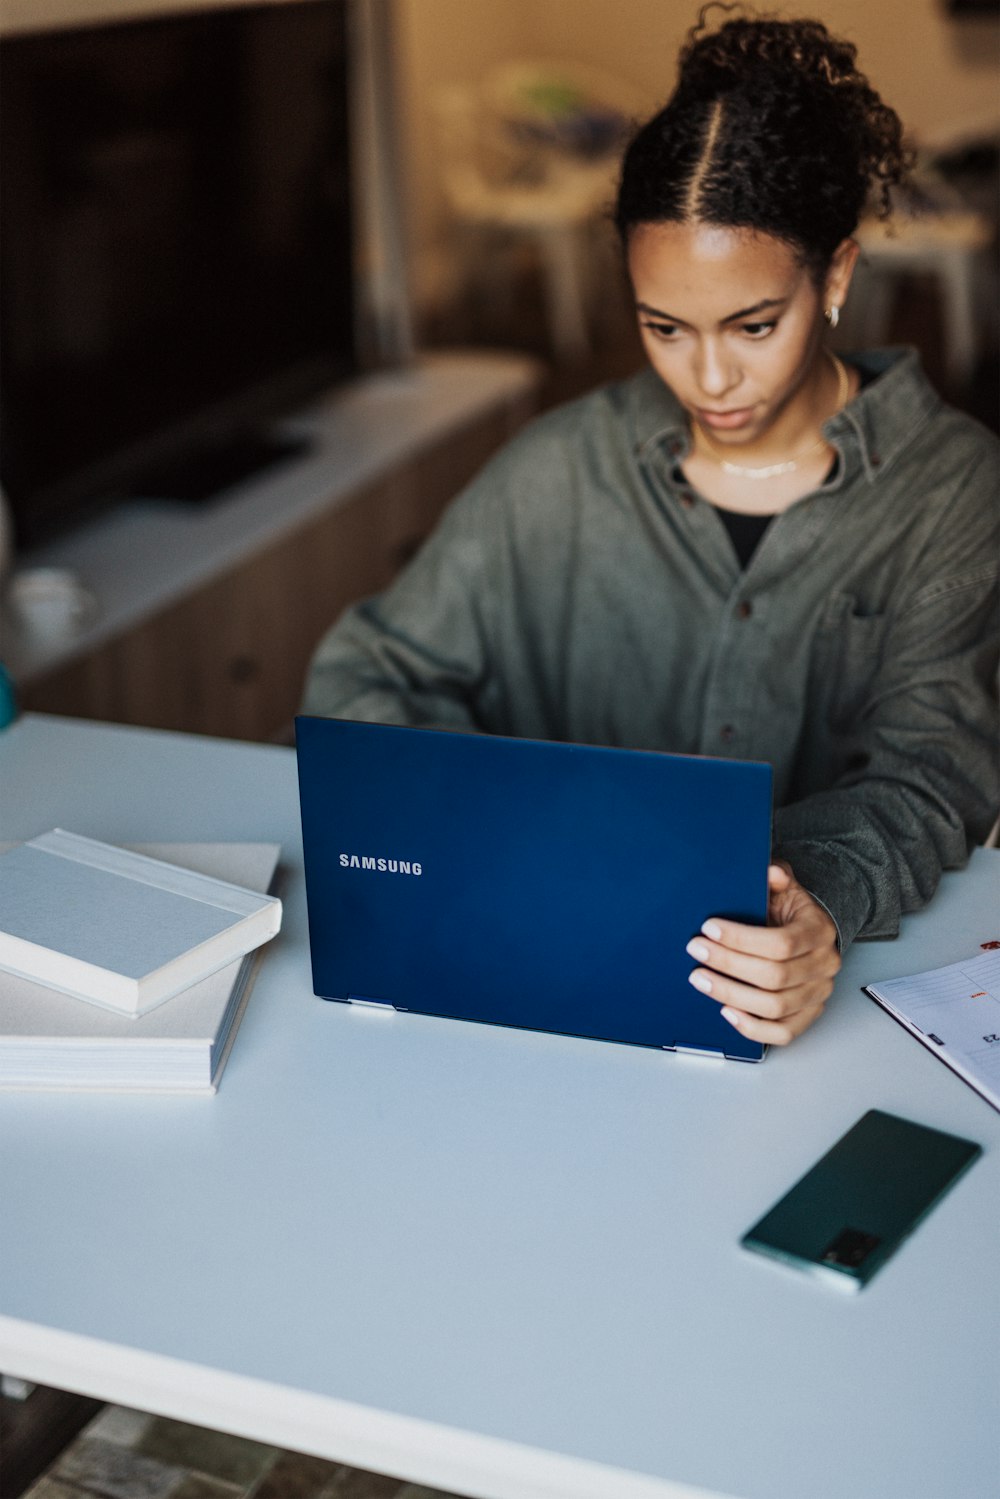 donna in giacca grigia che tiene il computer portatile blu